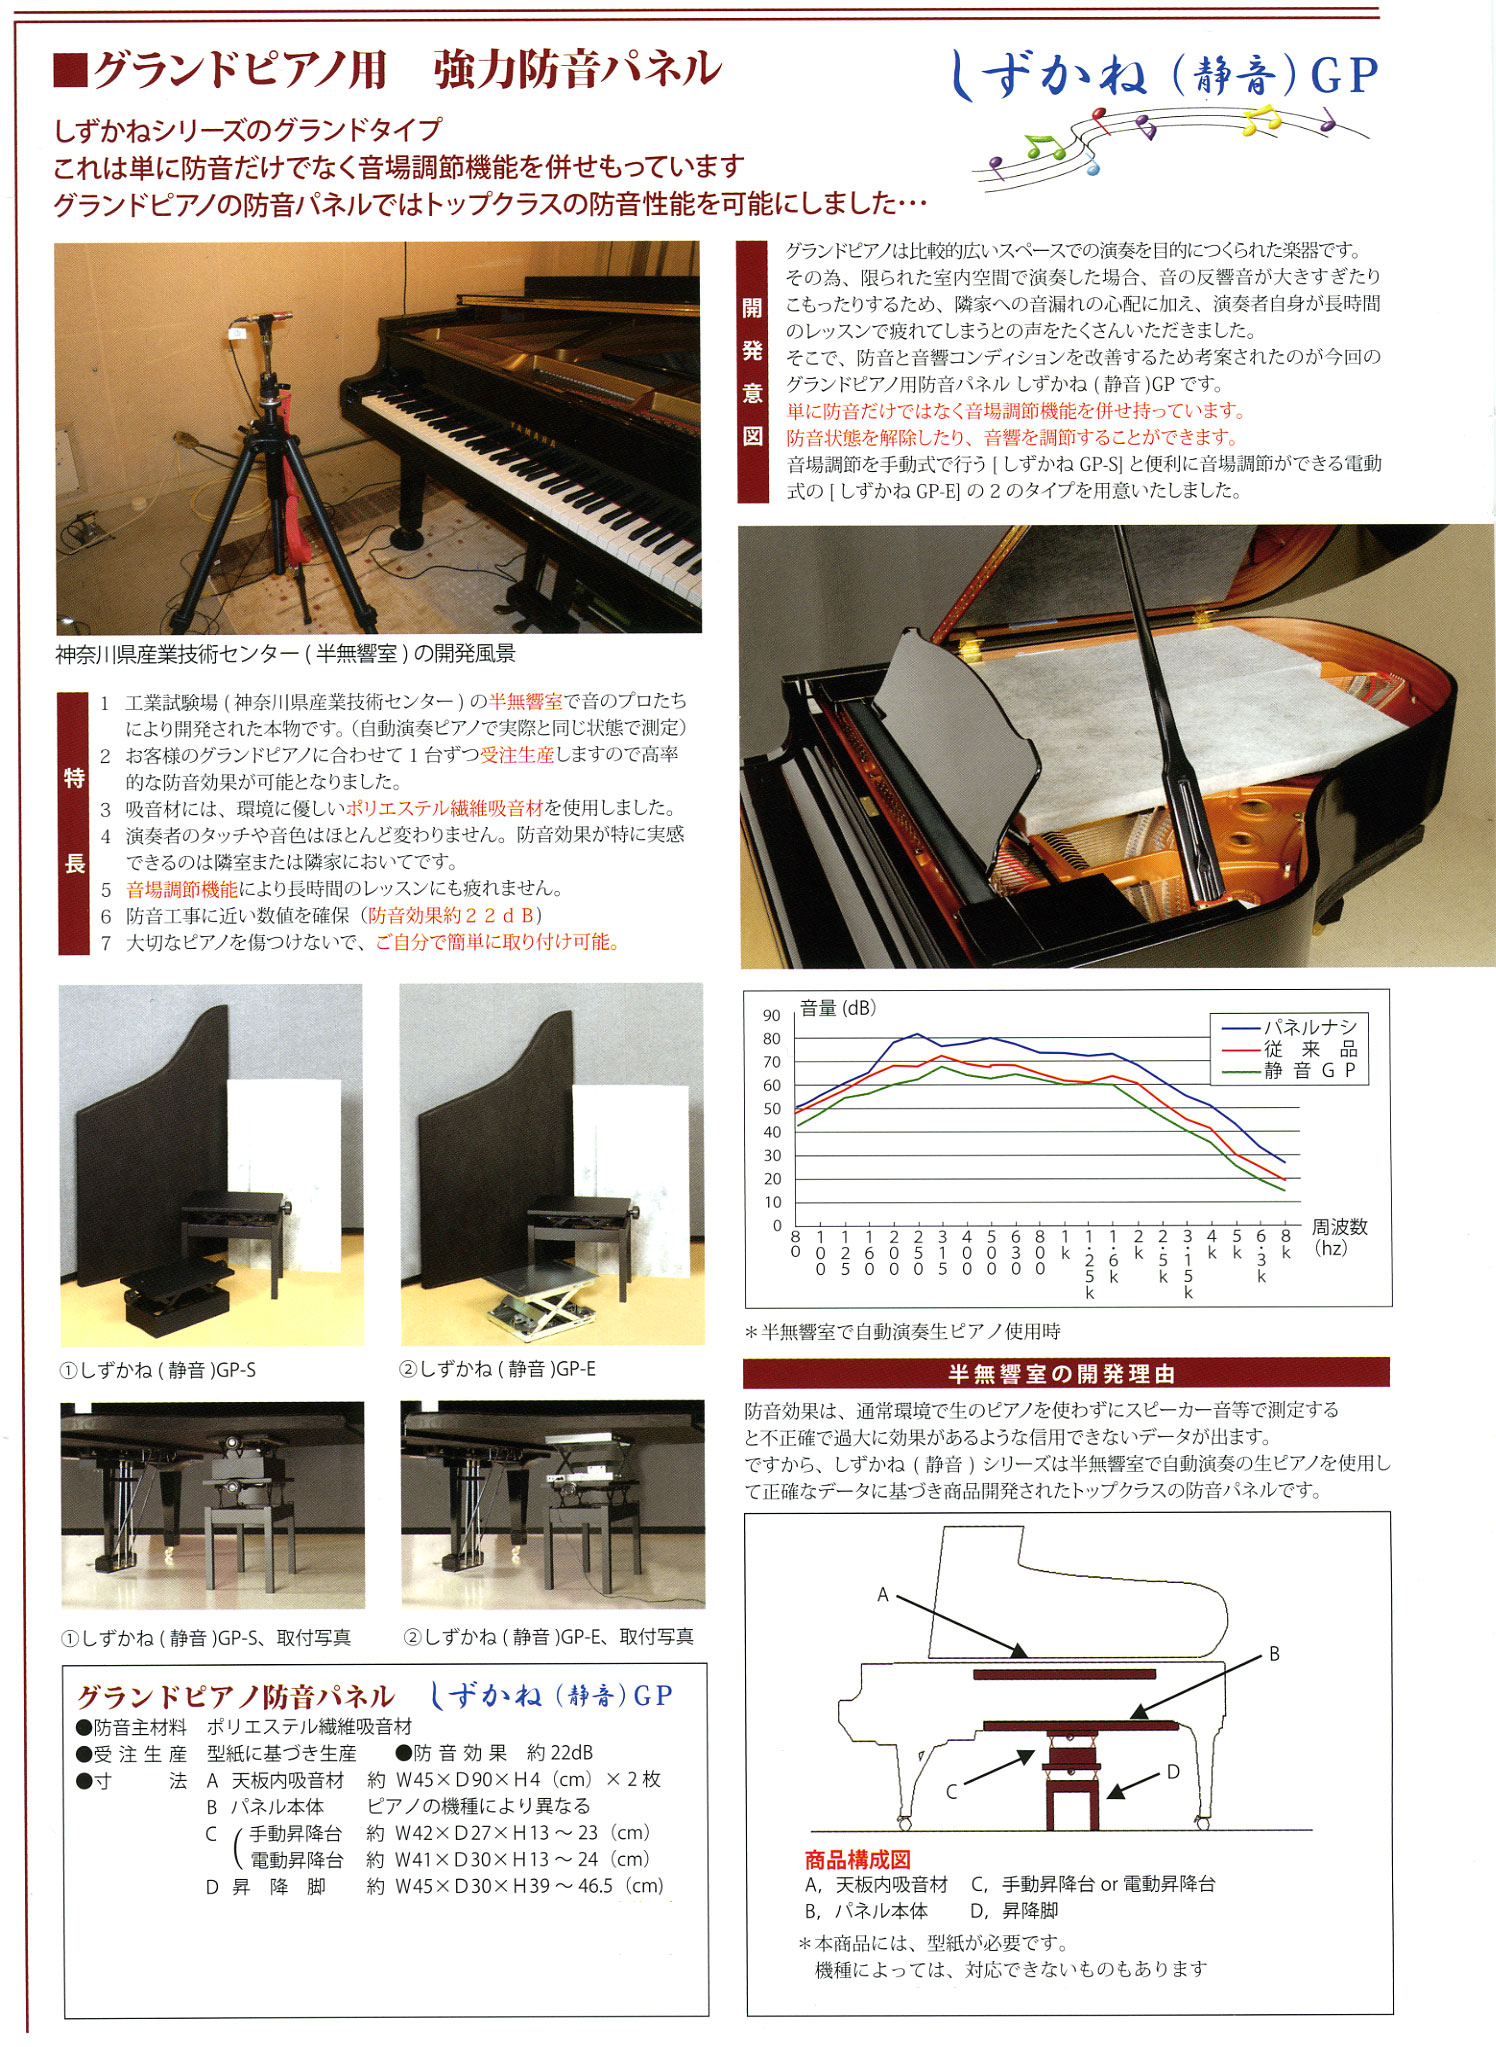 最愛 防音 防振用 インシュレーター グランドピアノ用 fawe.org